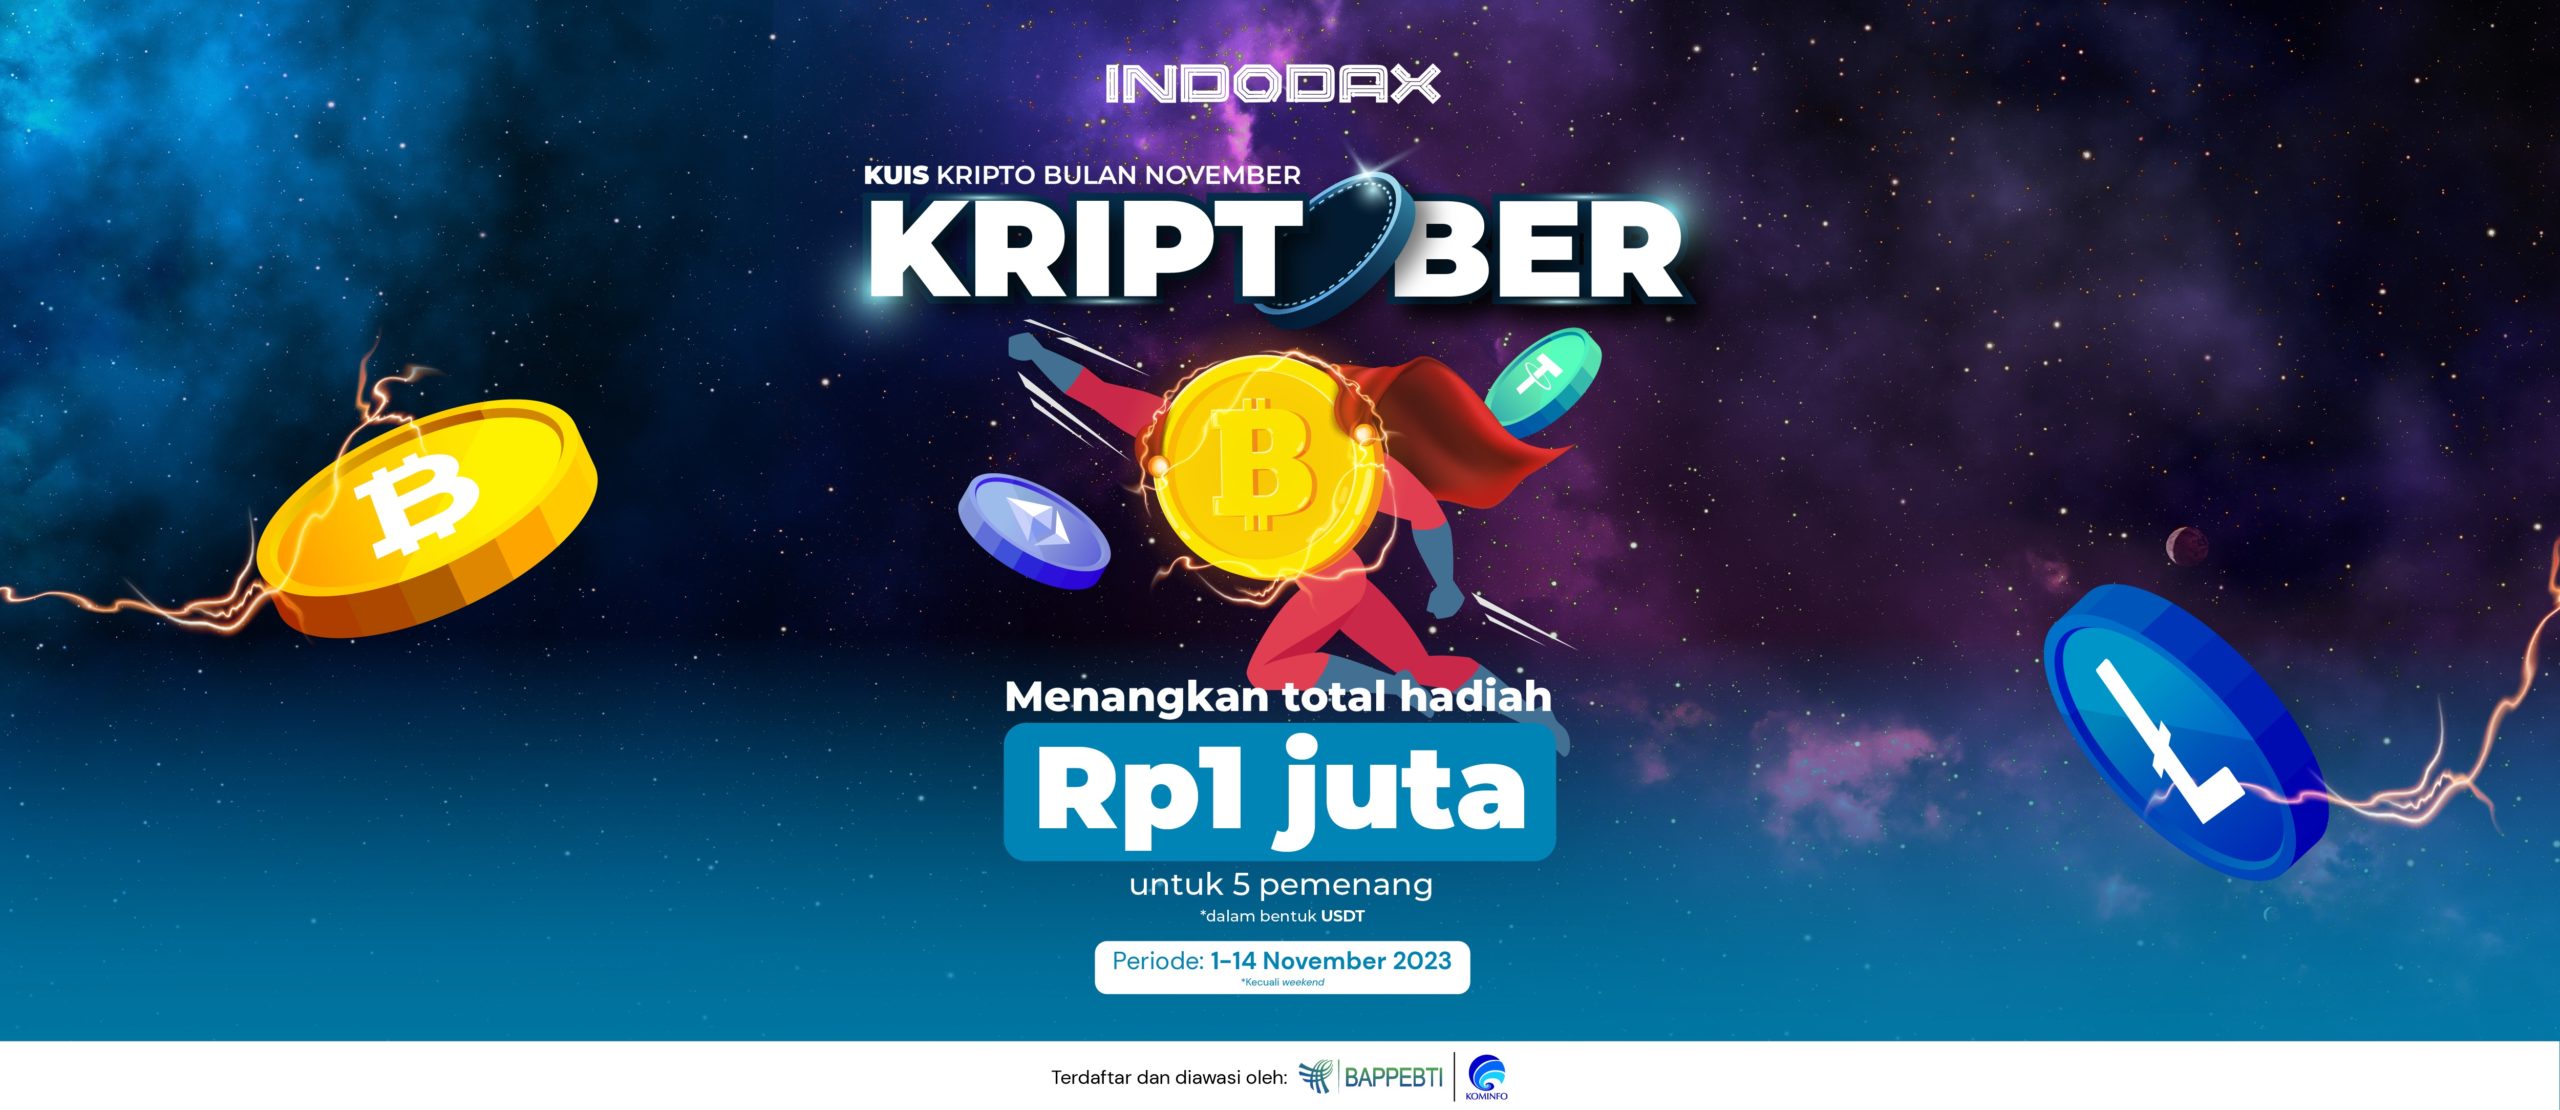 Ikutan kuis KRIPTOBER V2 (Kuis Kripto November) bersama Tim Community INDODAX di Telegram (@indodaxroom) sekarang juga!